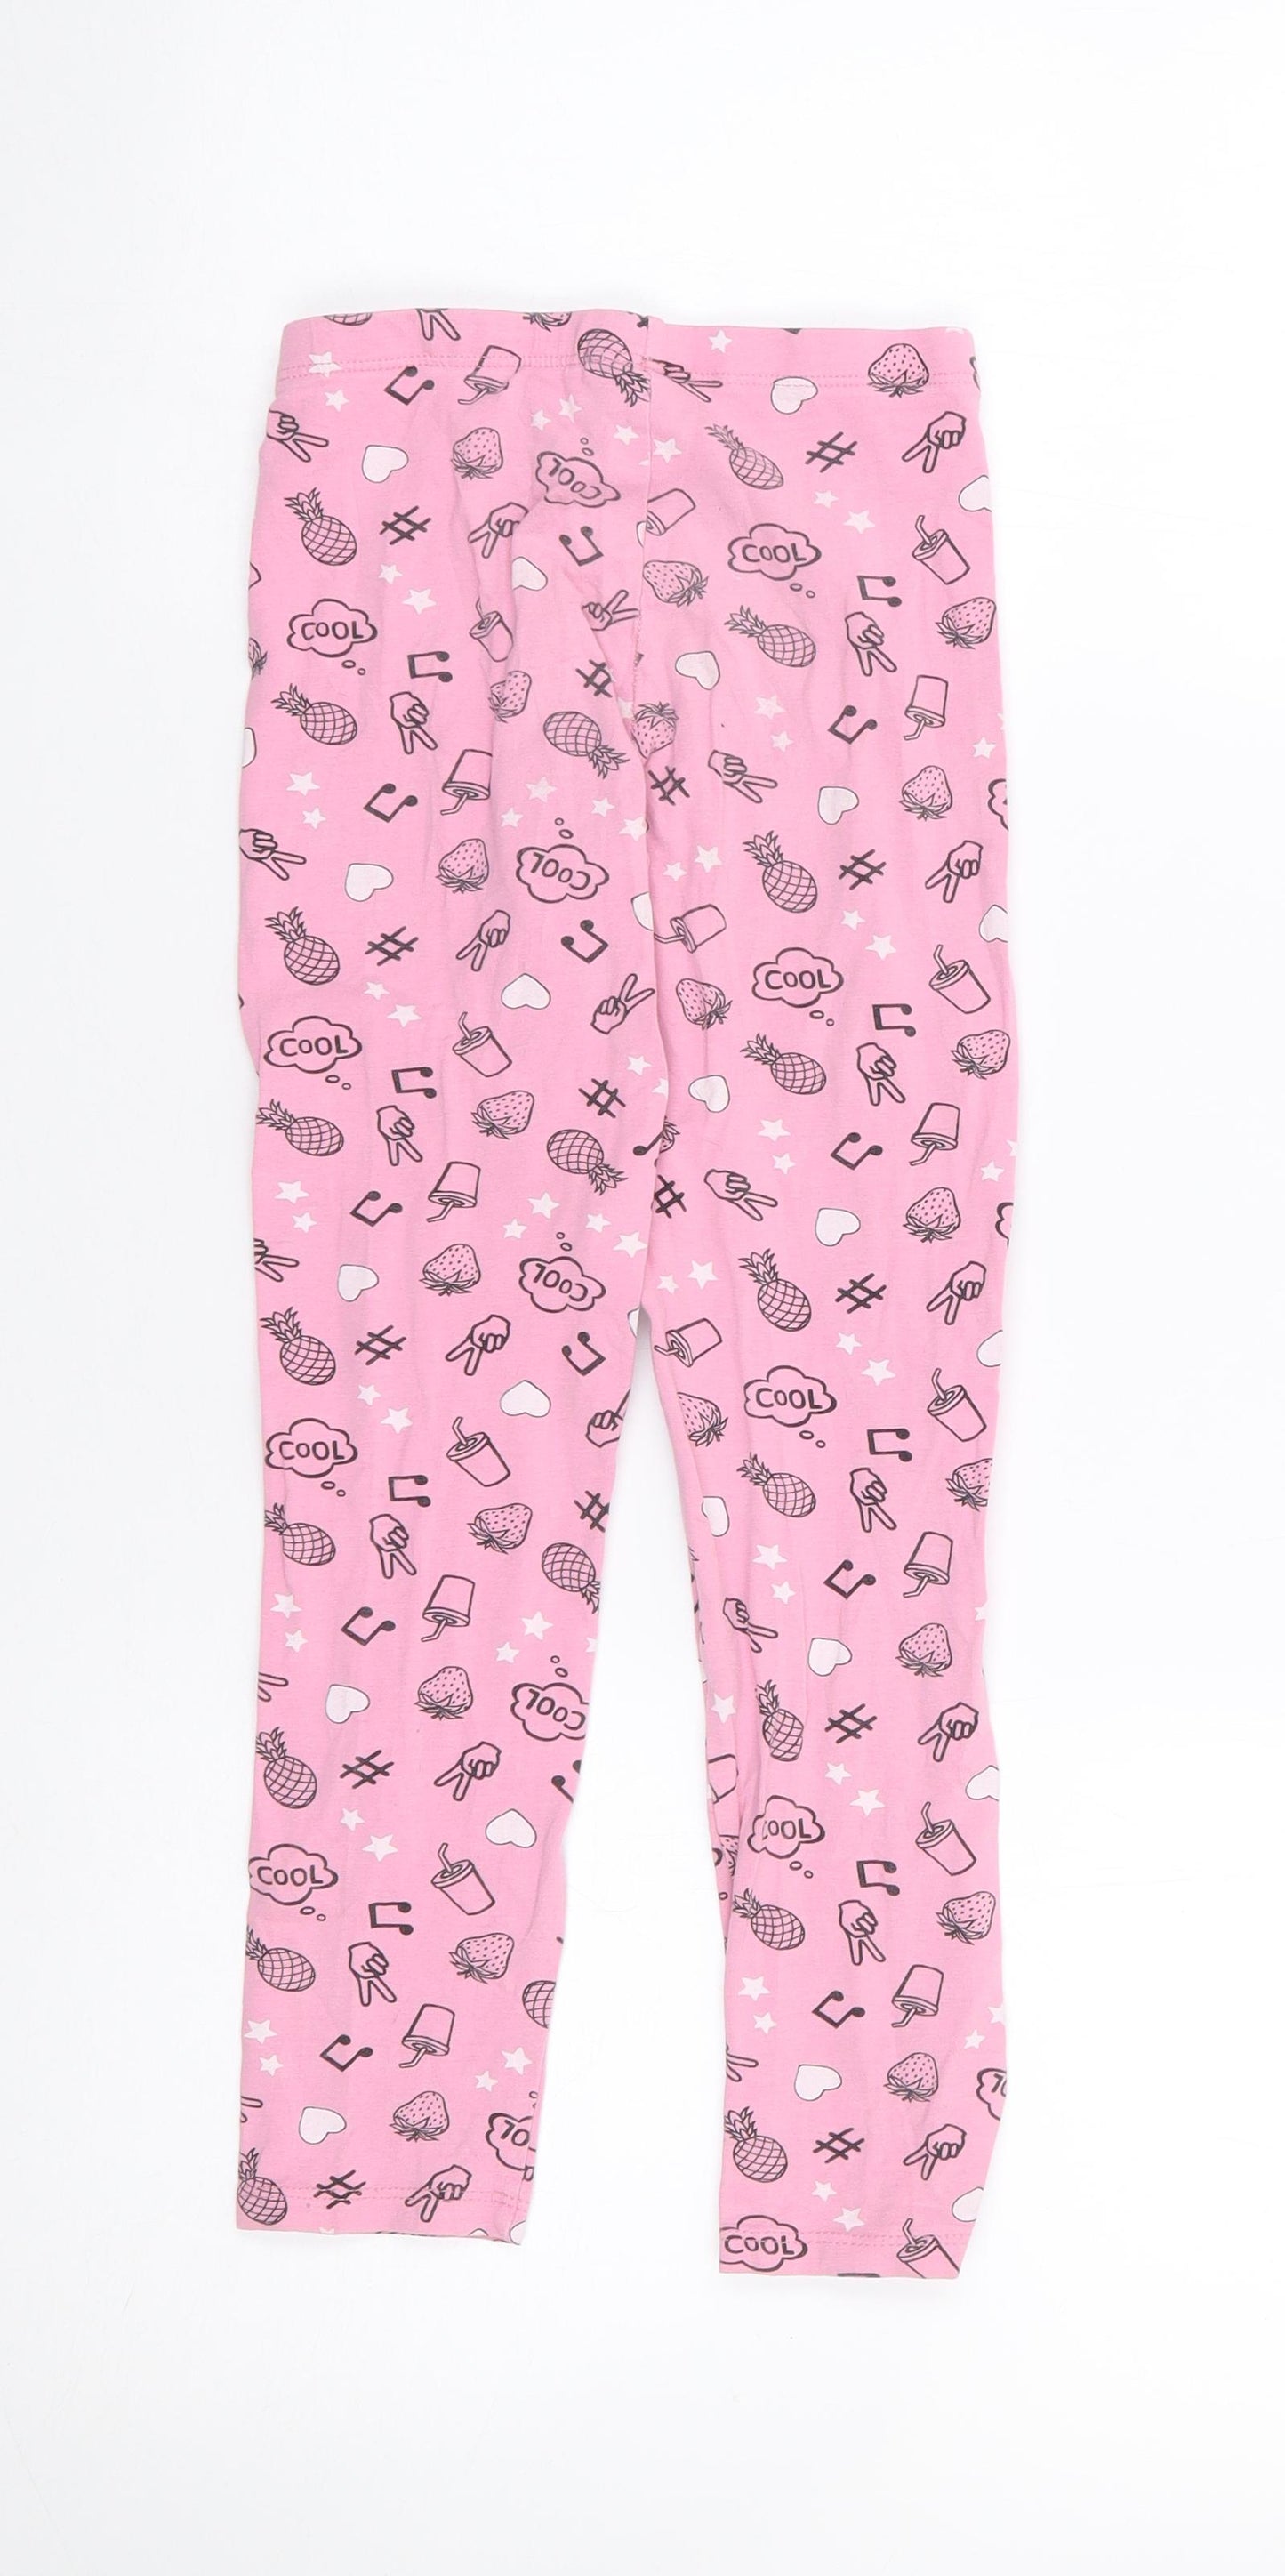 Matalan Girls Pink Geometric Cotton Pedal Pusher Trousers Size 9 Years L20 in Regular  - Legging